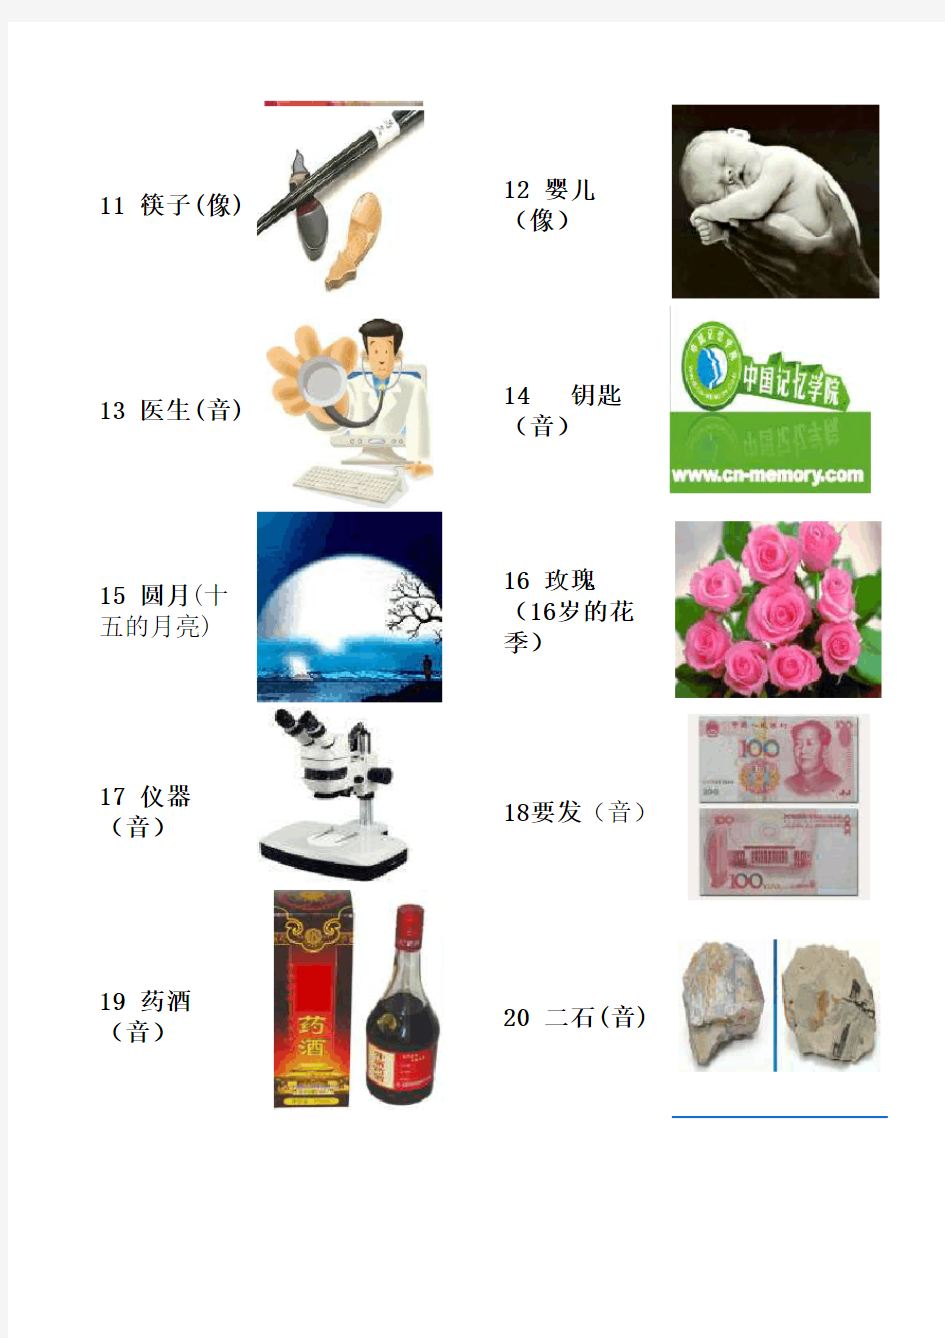 中国记忆学院110数字密码表(V1.0)